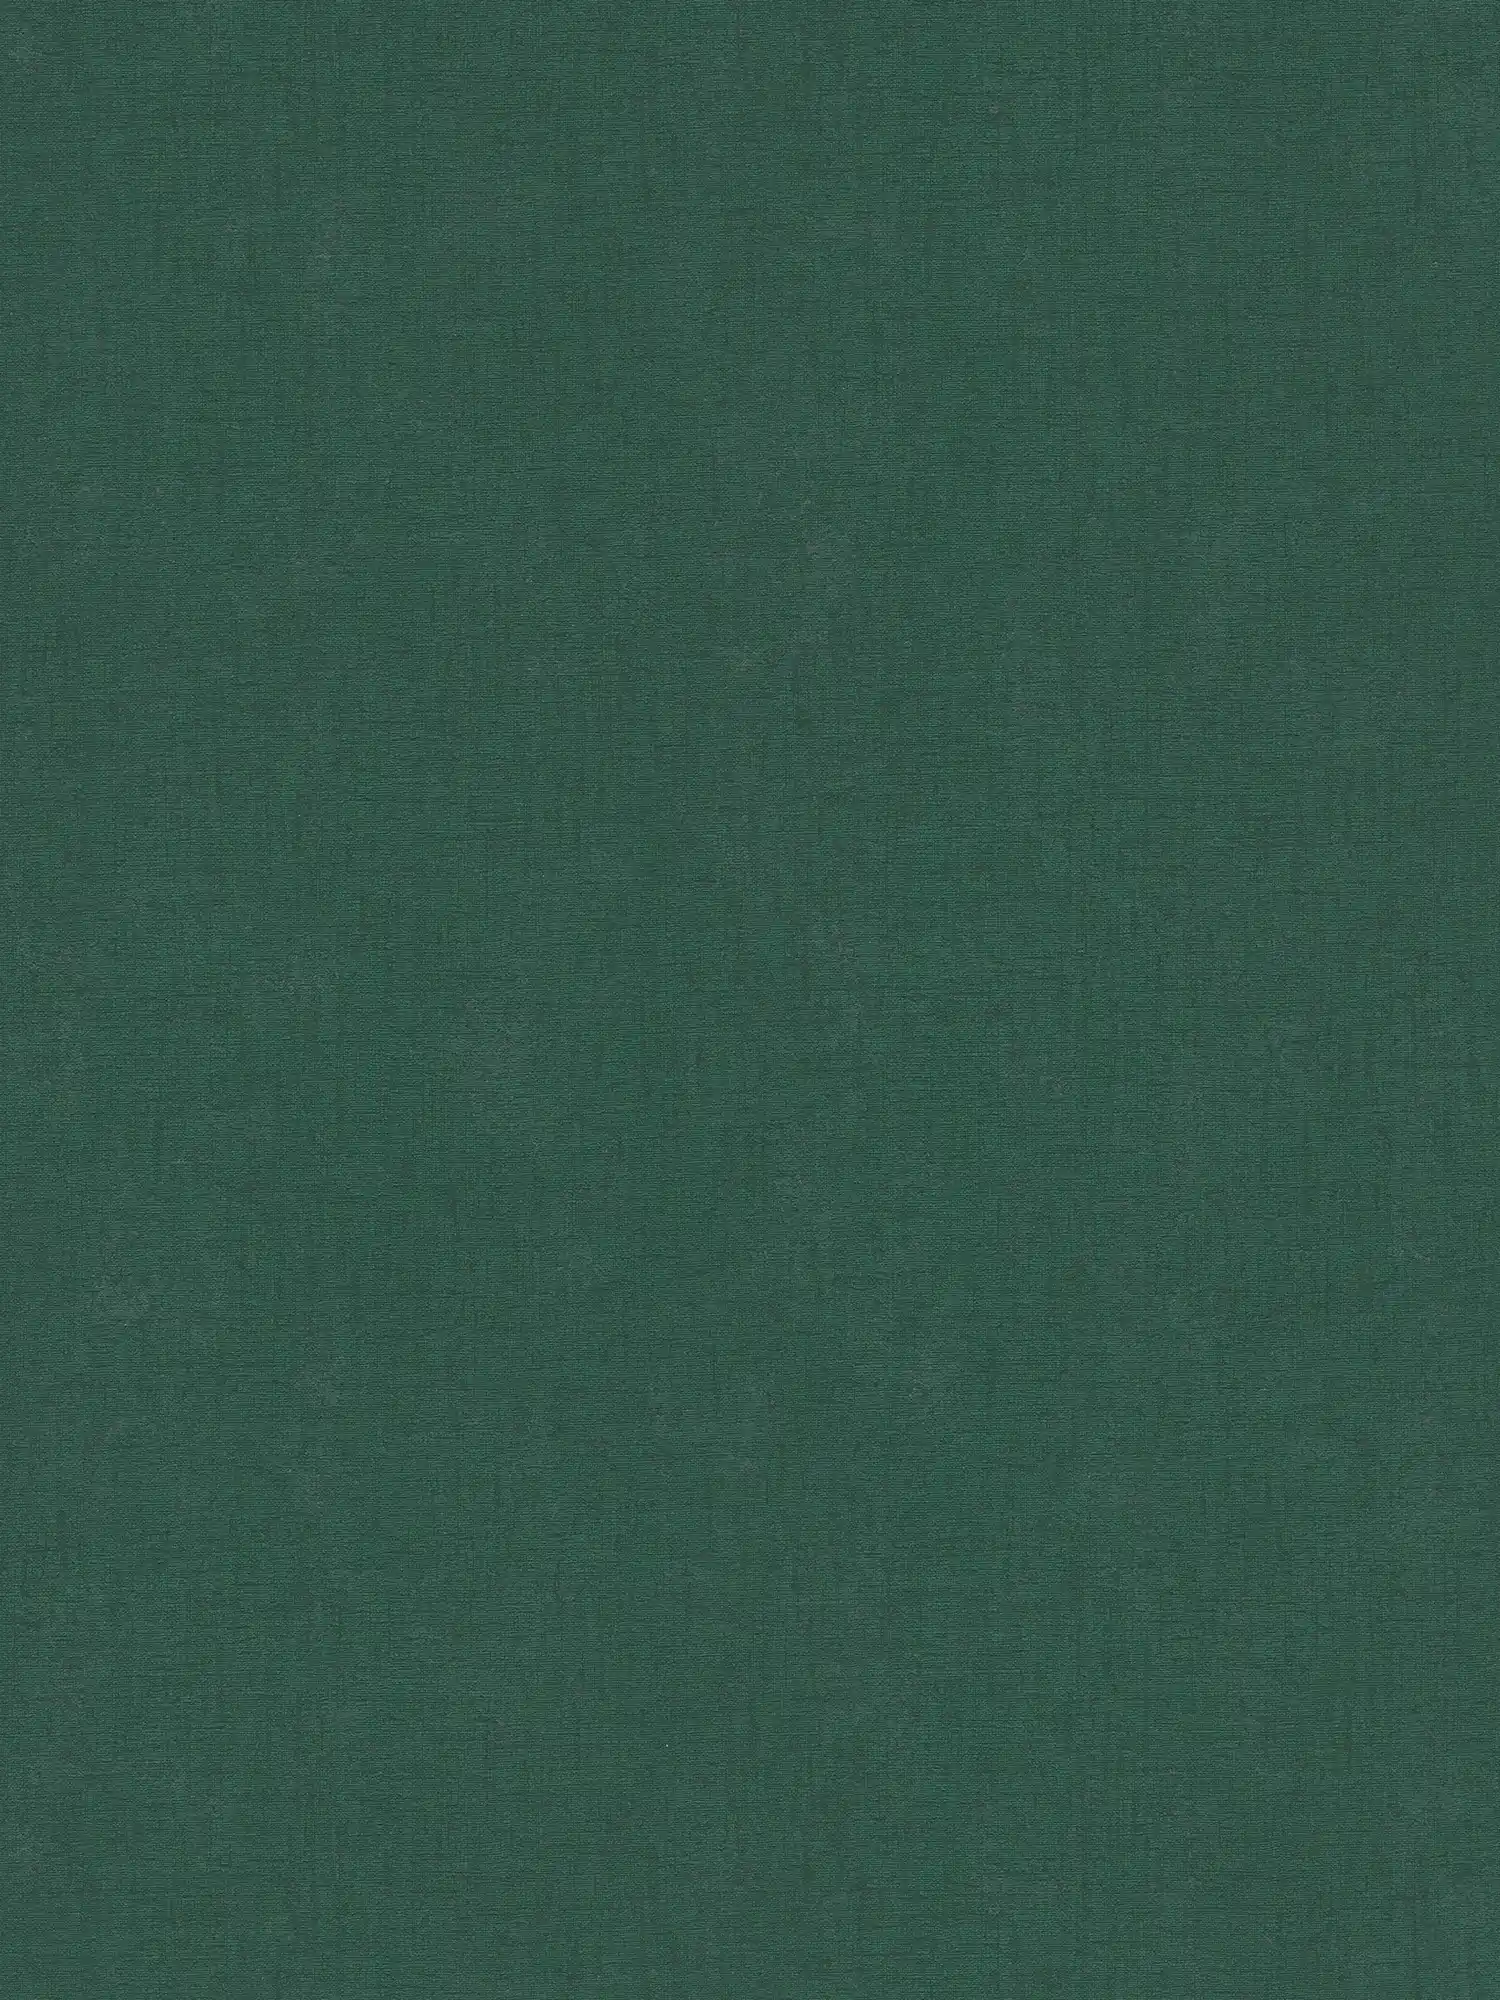 Single-coloured non-woven wallpaper with a light texture - green, dark green
